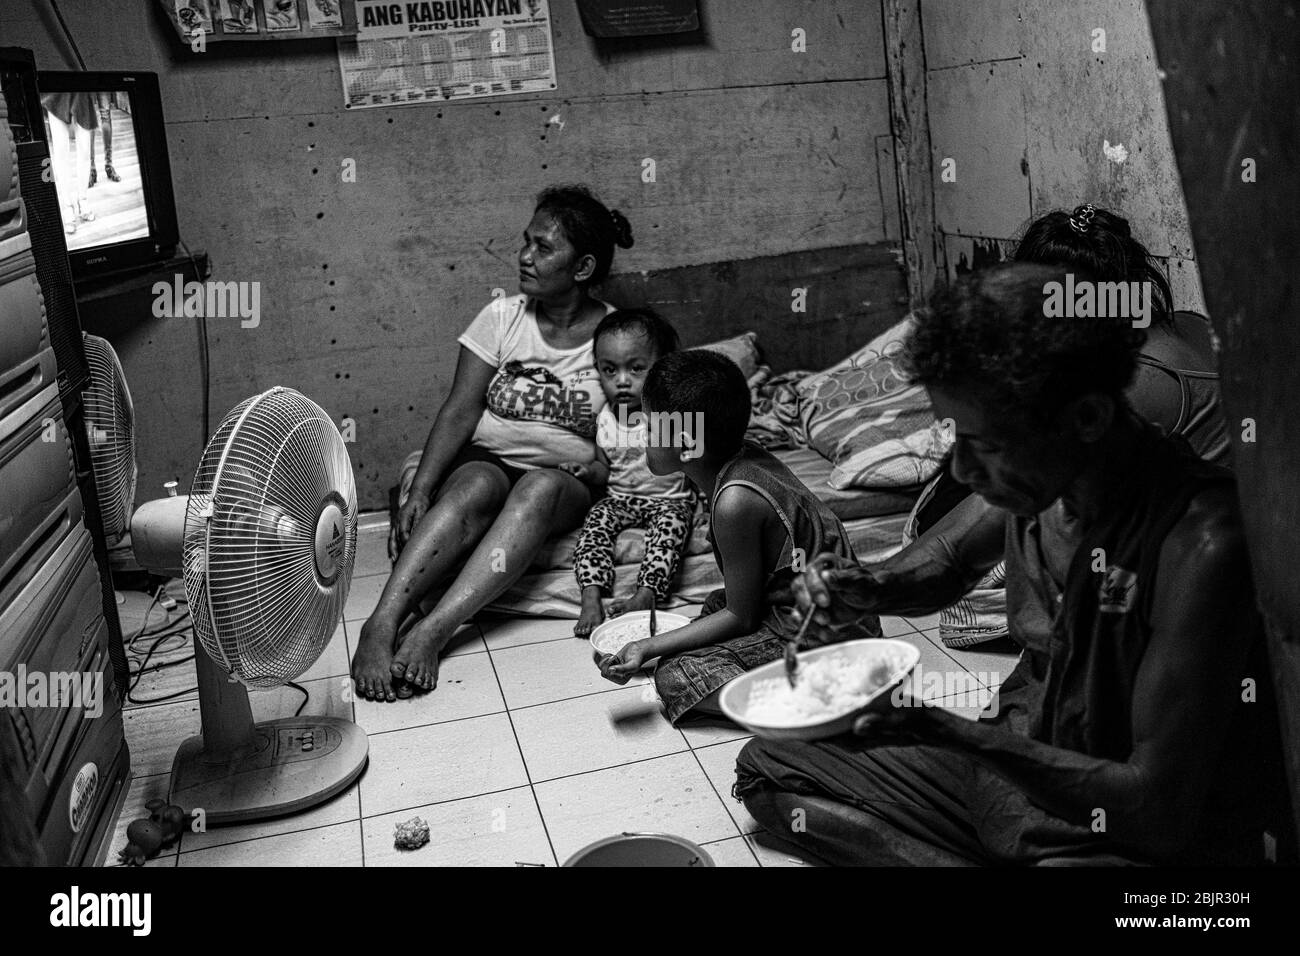 Manila straßenessen Schwarzweiß-Stockfotos und -bilder - Alamy